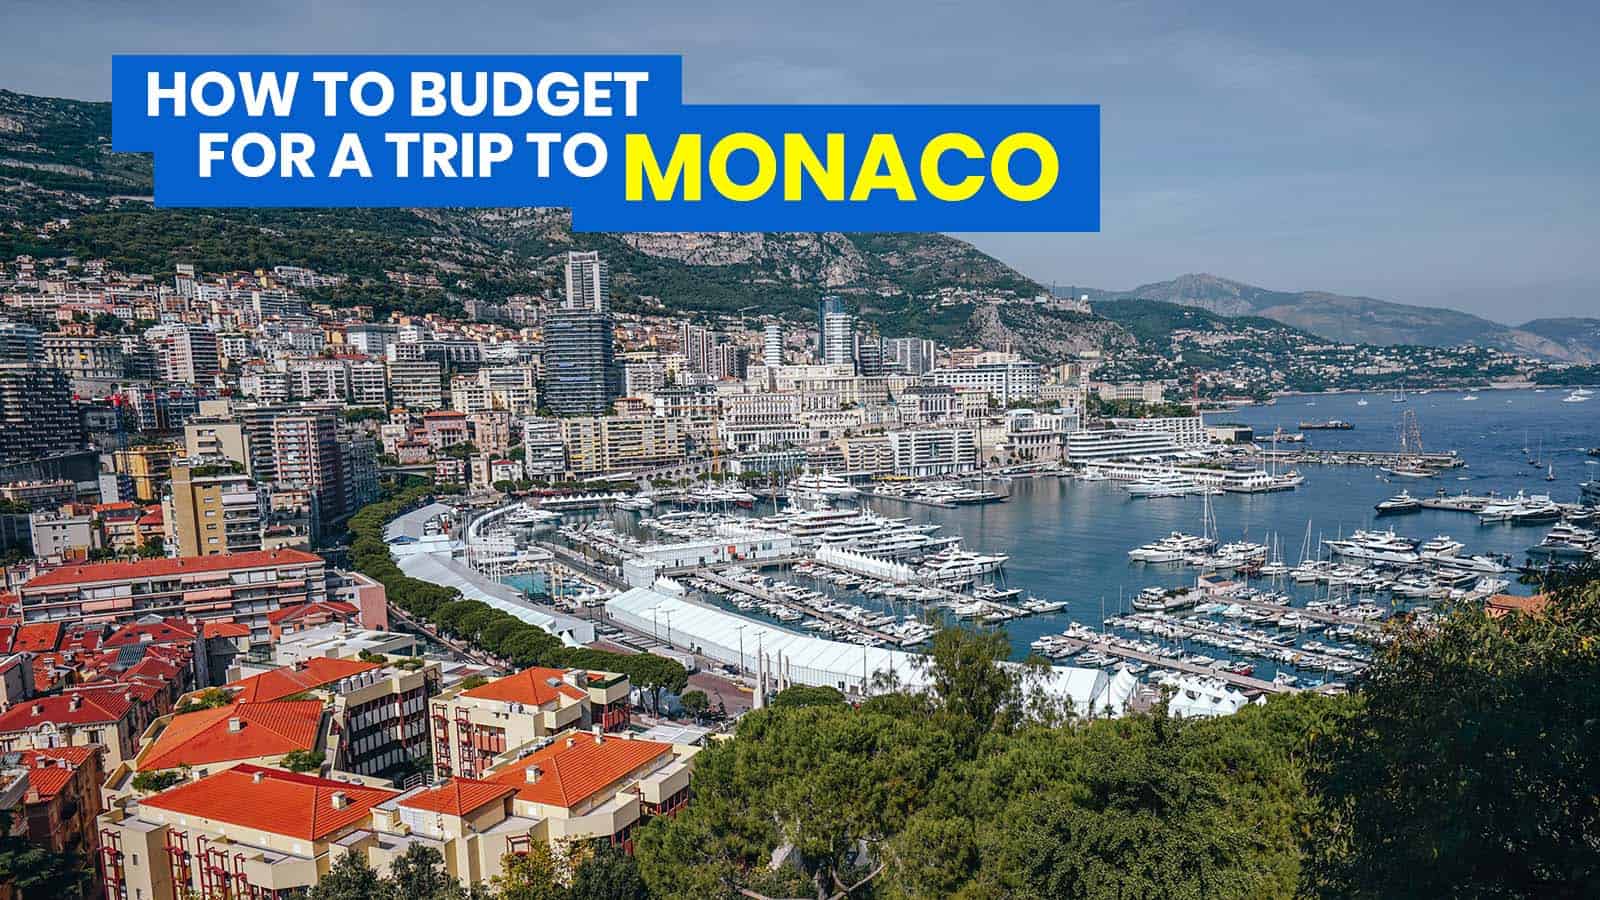 摩纳哥旅游指南与样本行程和预算